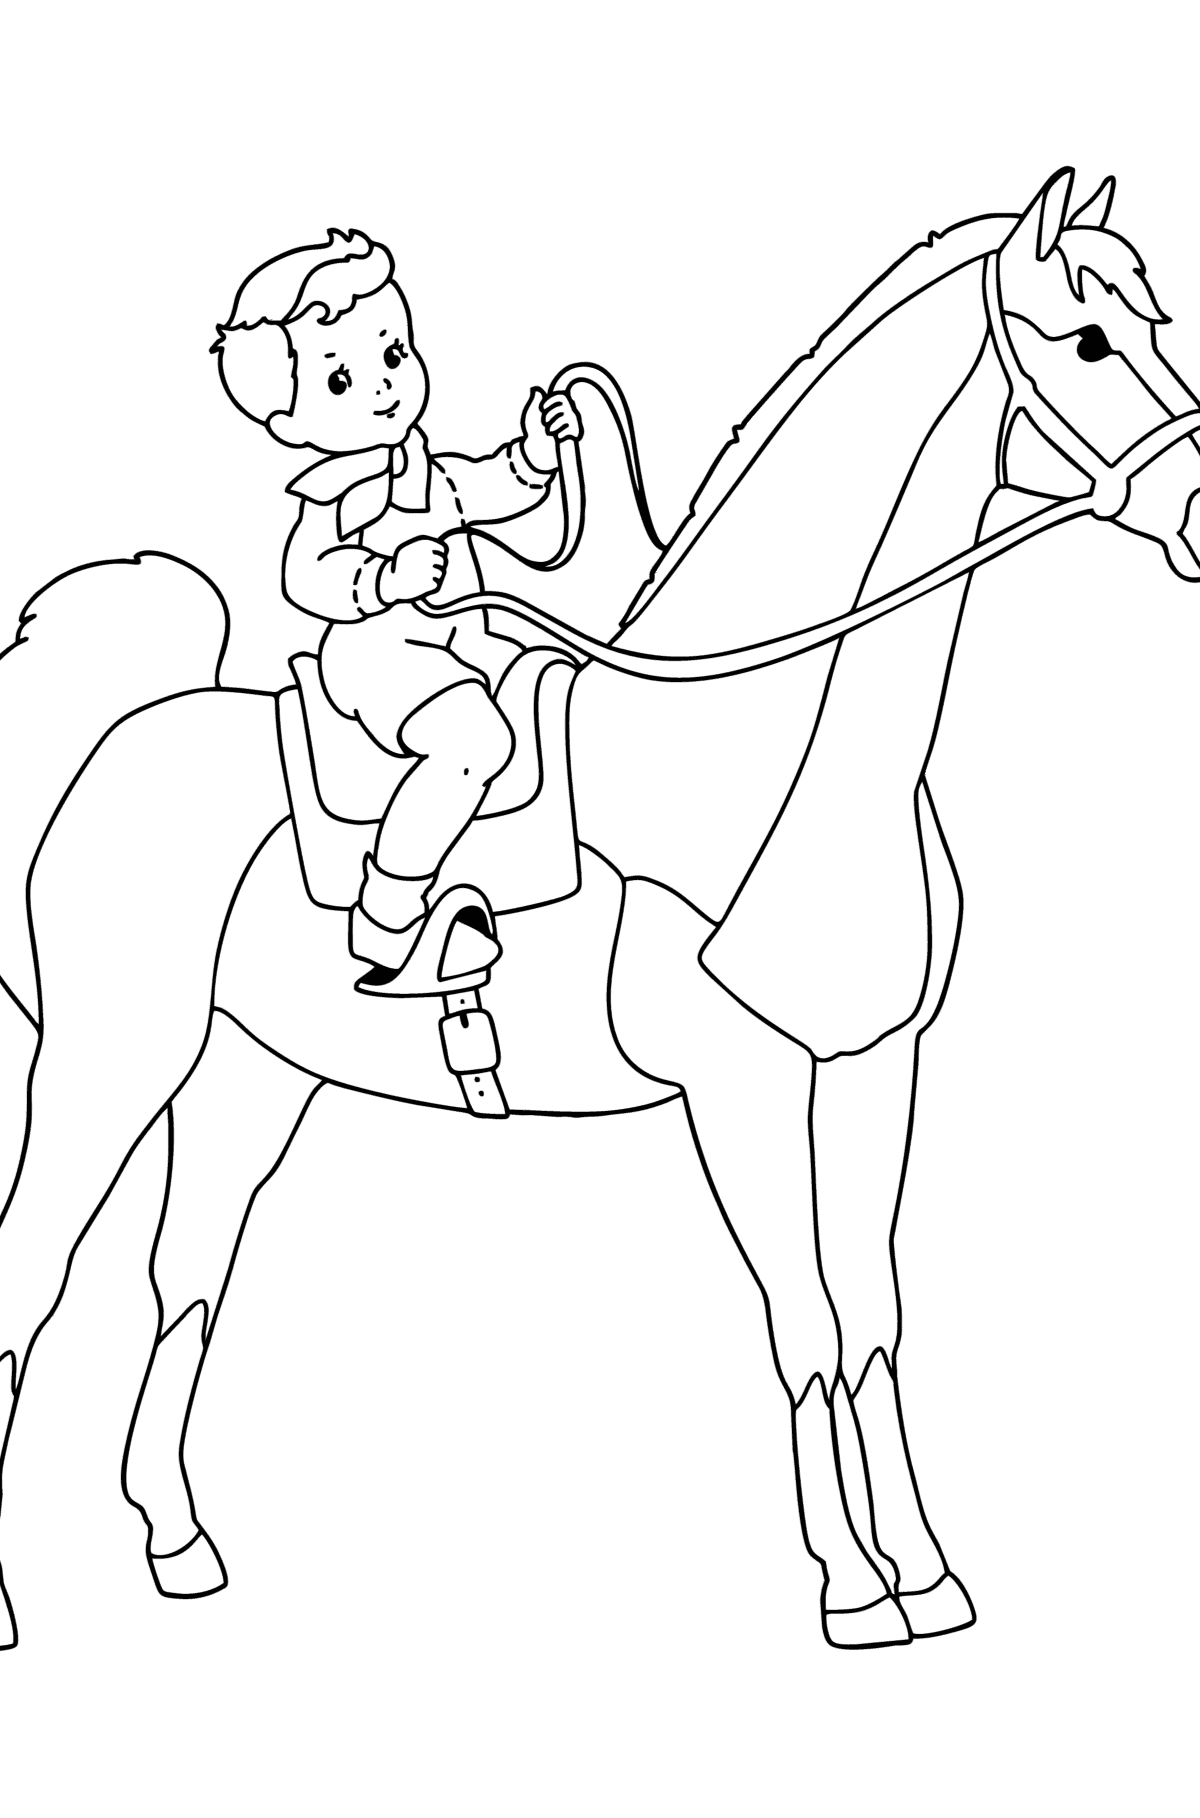 Värityskuva Poika hevosen selässä - Värityskuvat lapsille